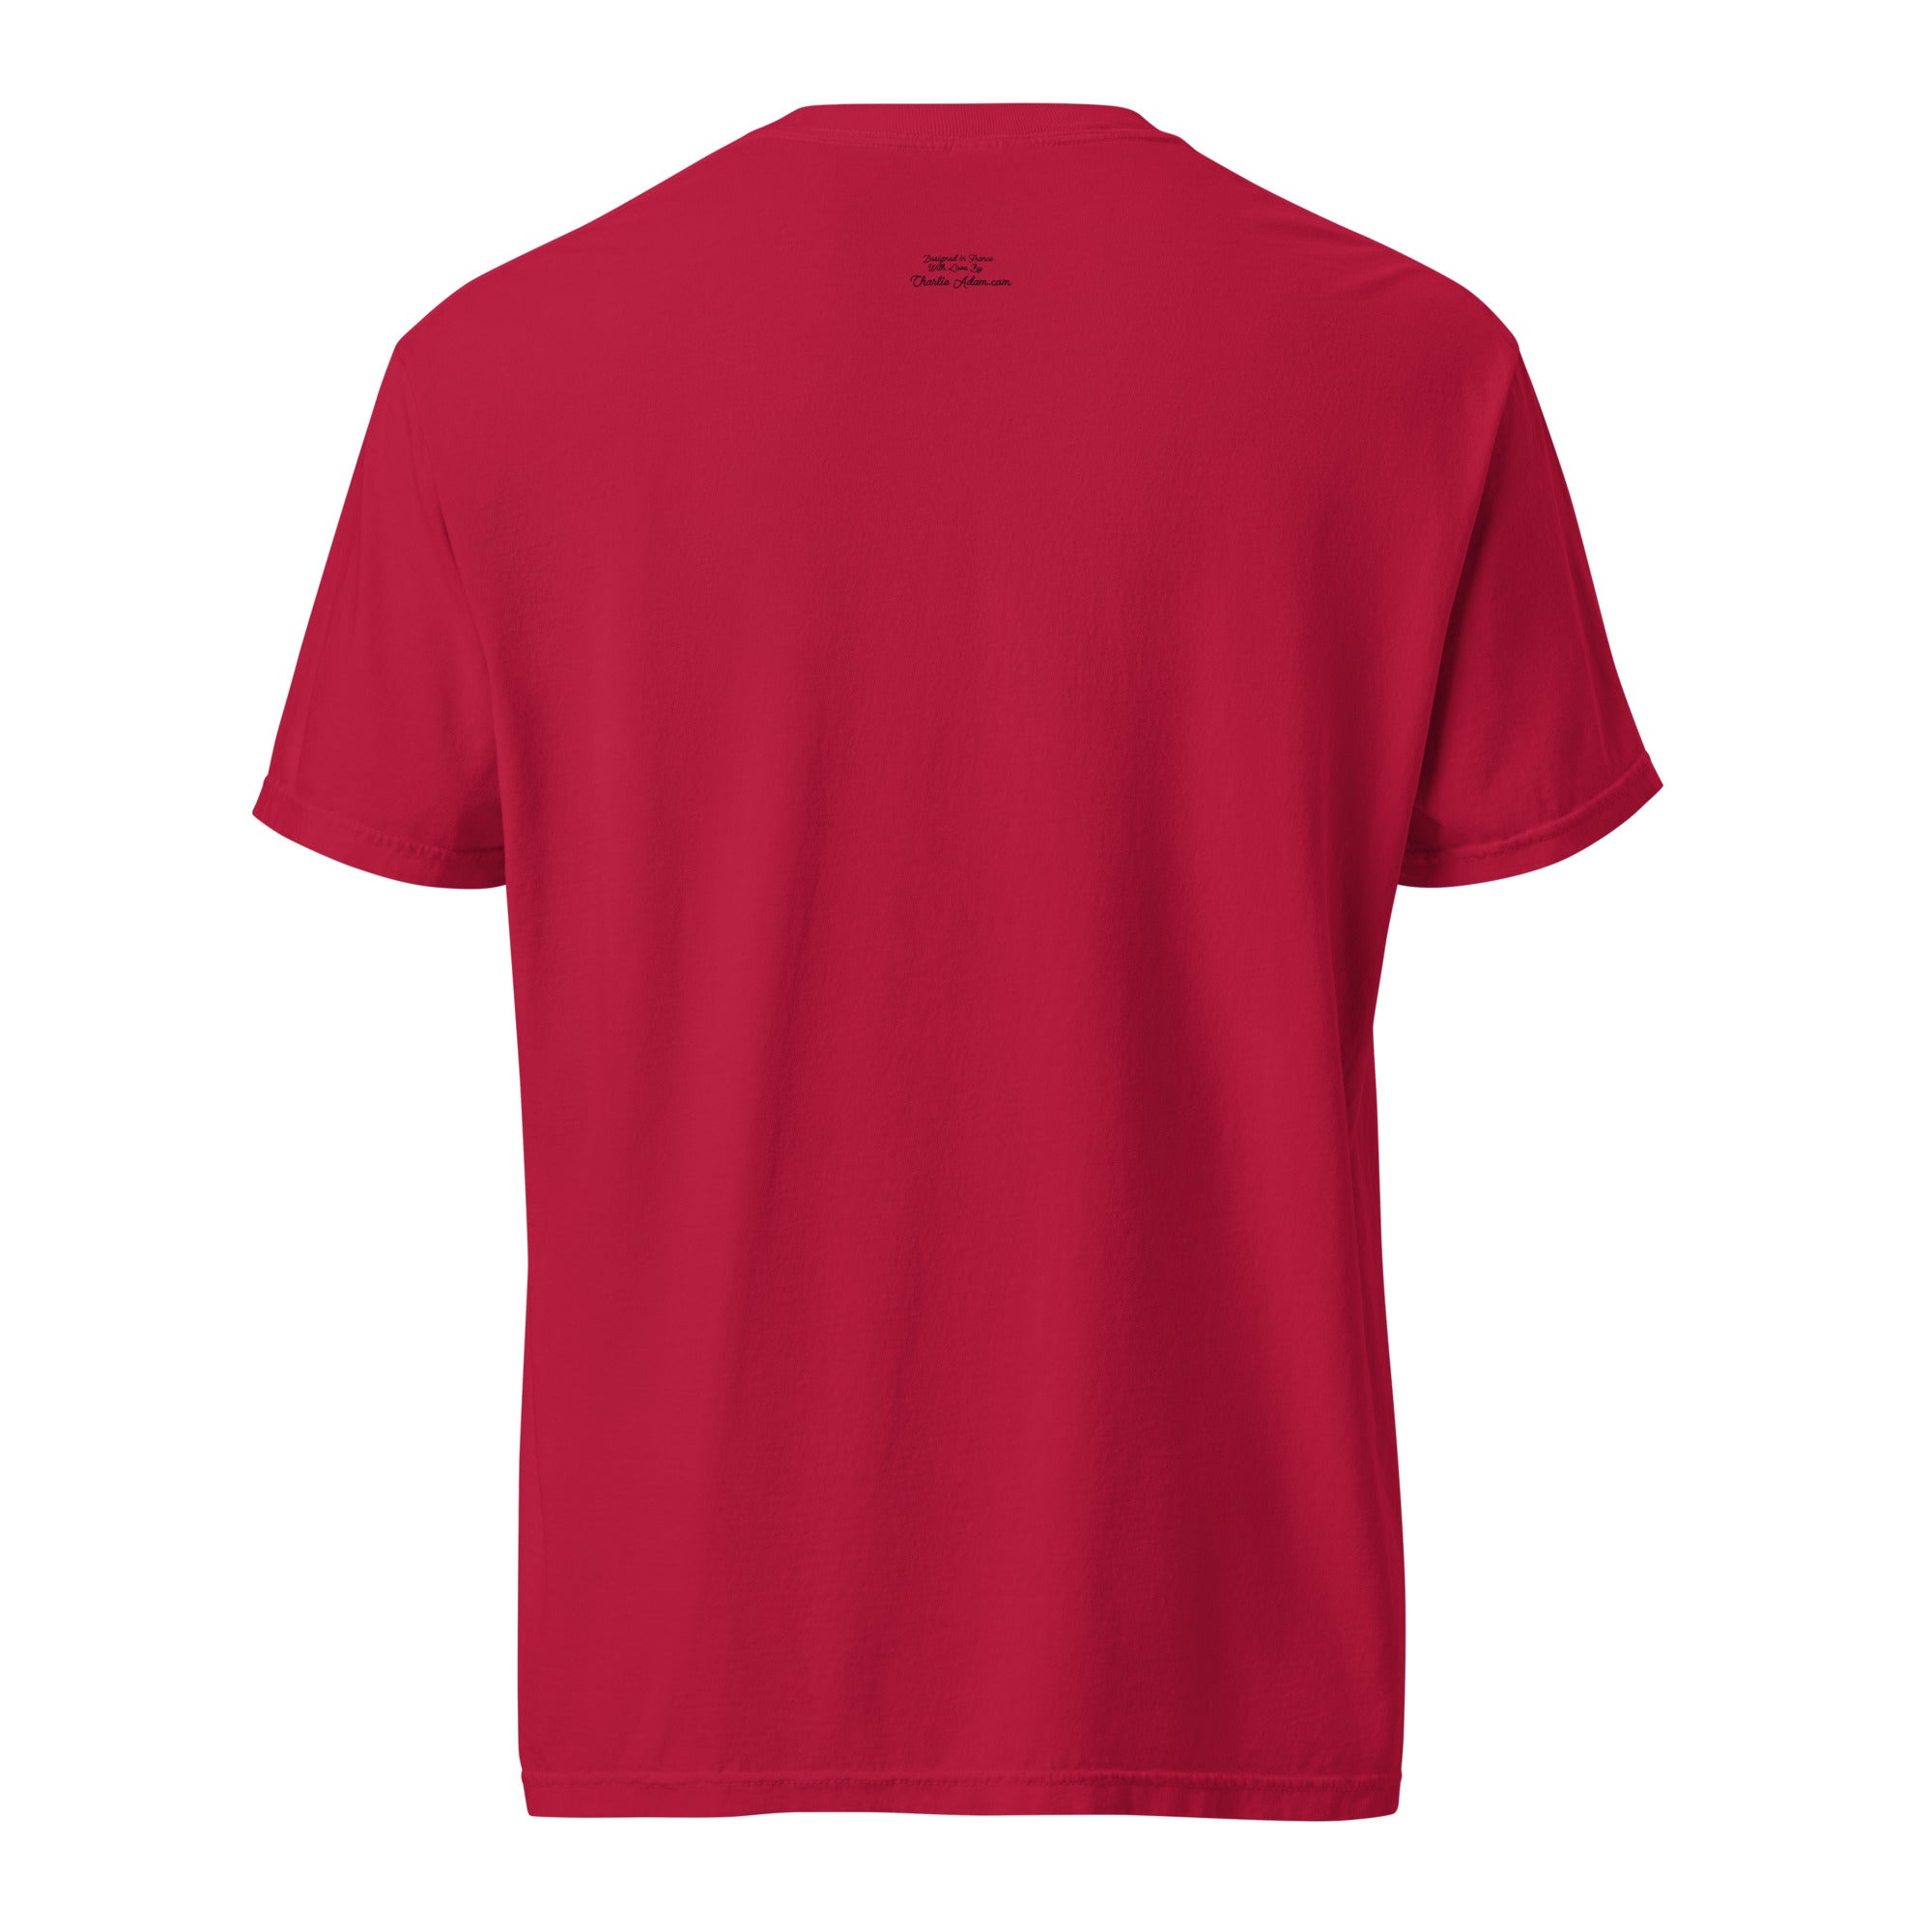 T-shirt teinté lourd unisexe Roller Disco sur rouges